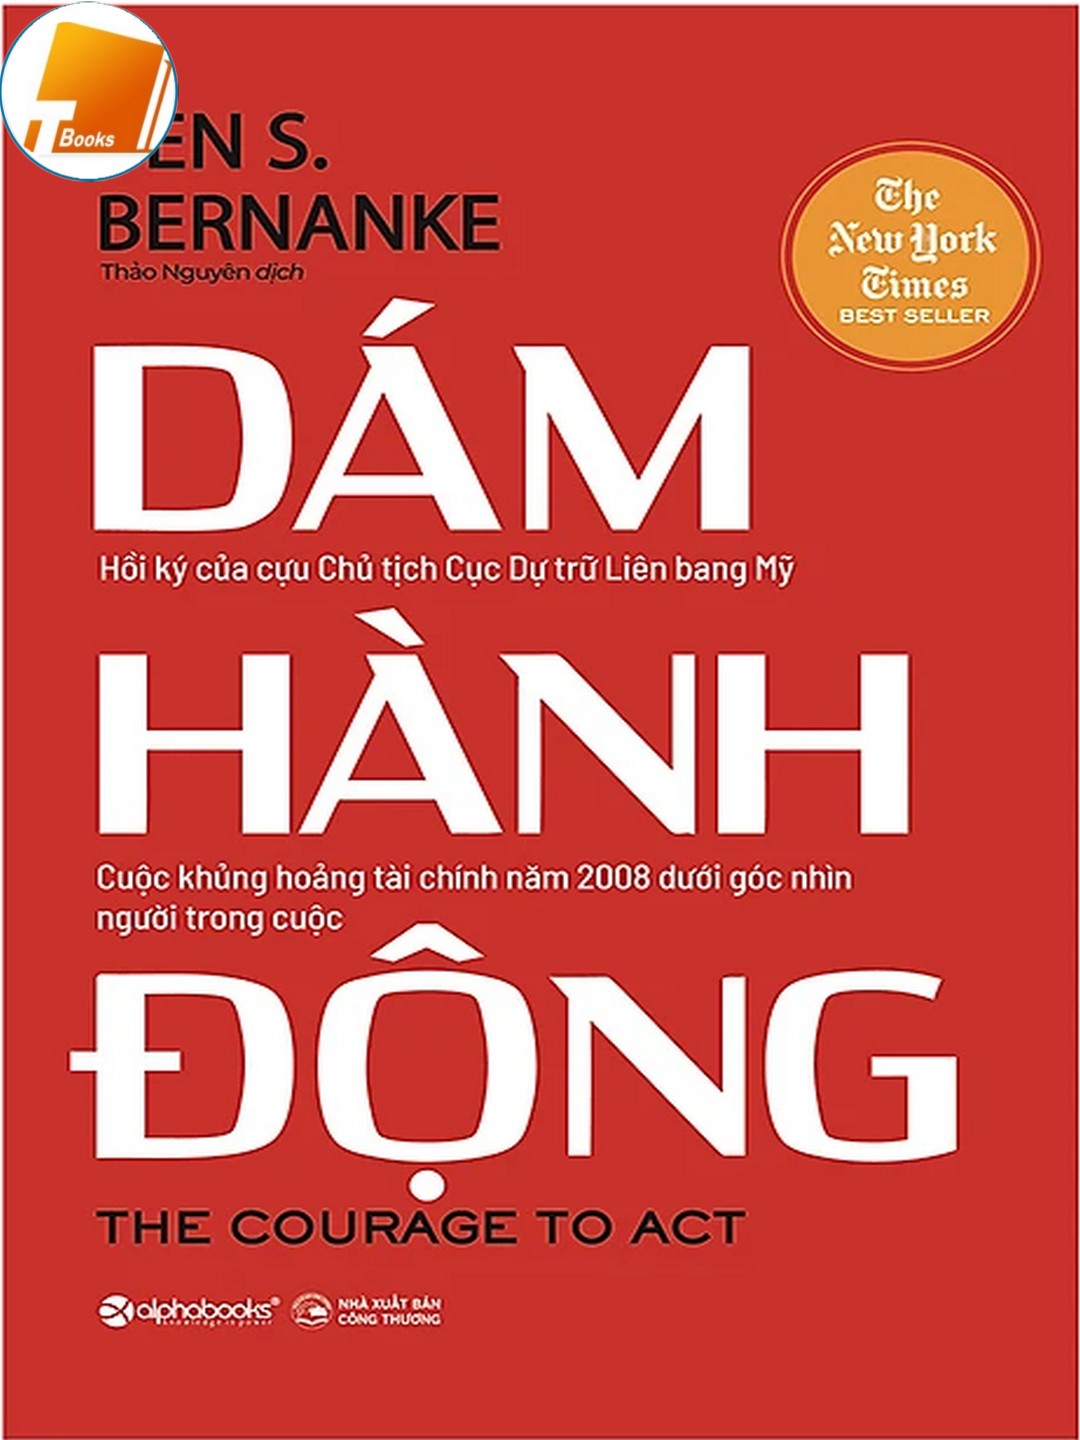 Ebook Dám Hành Động Tác giả: Ben S. Bernanke PDF